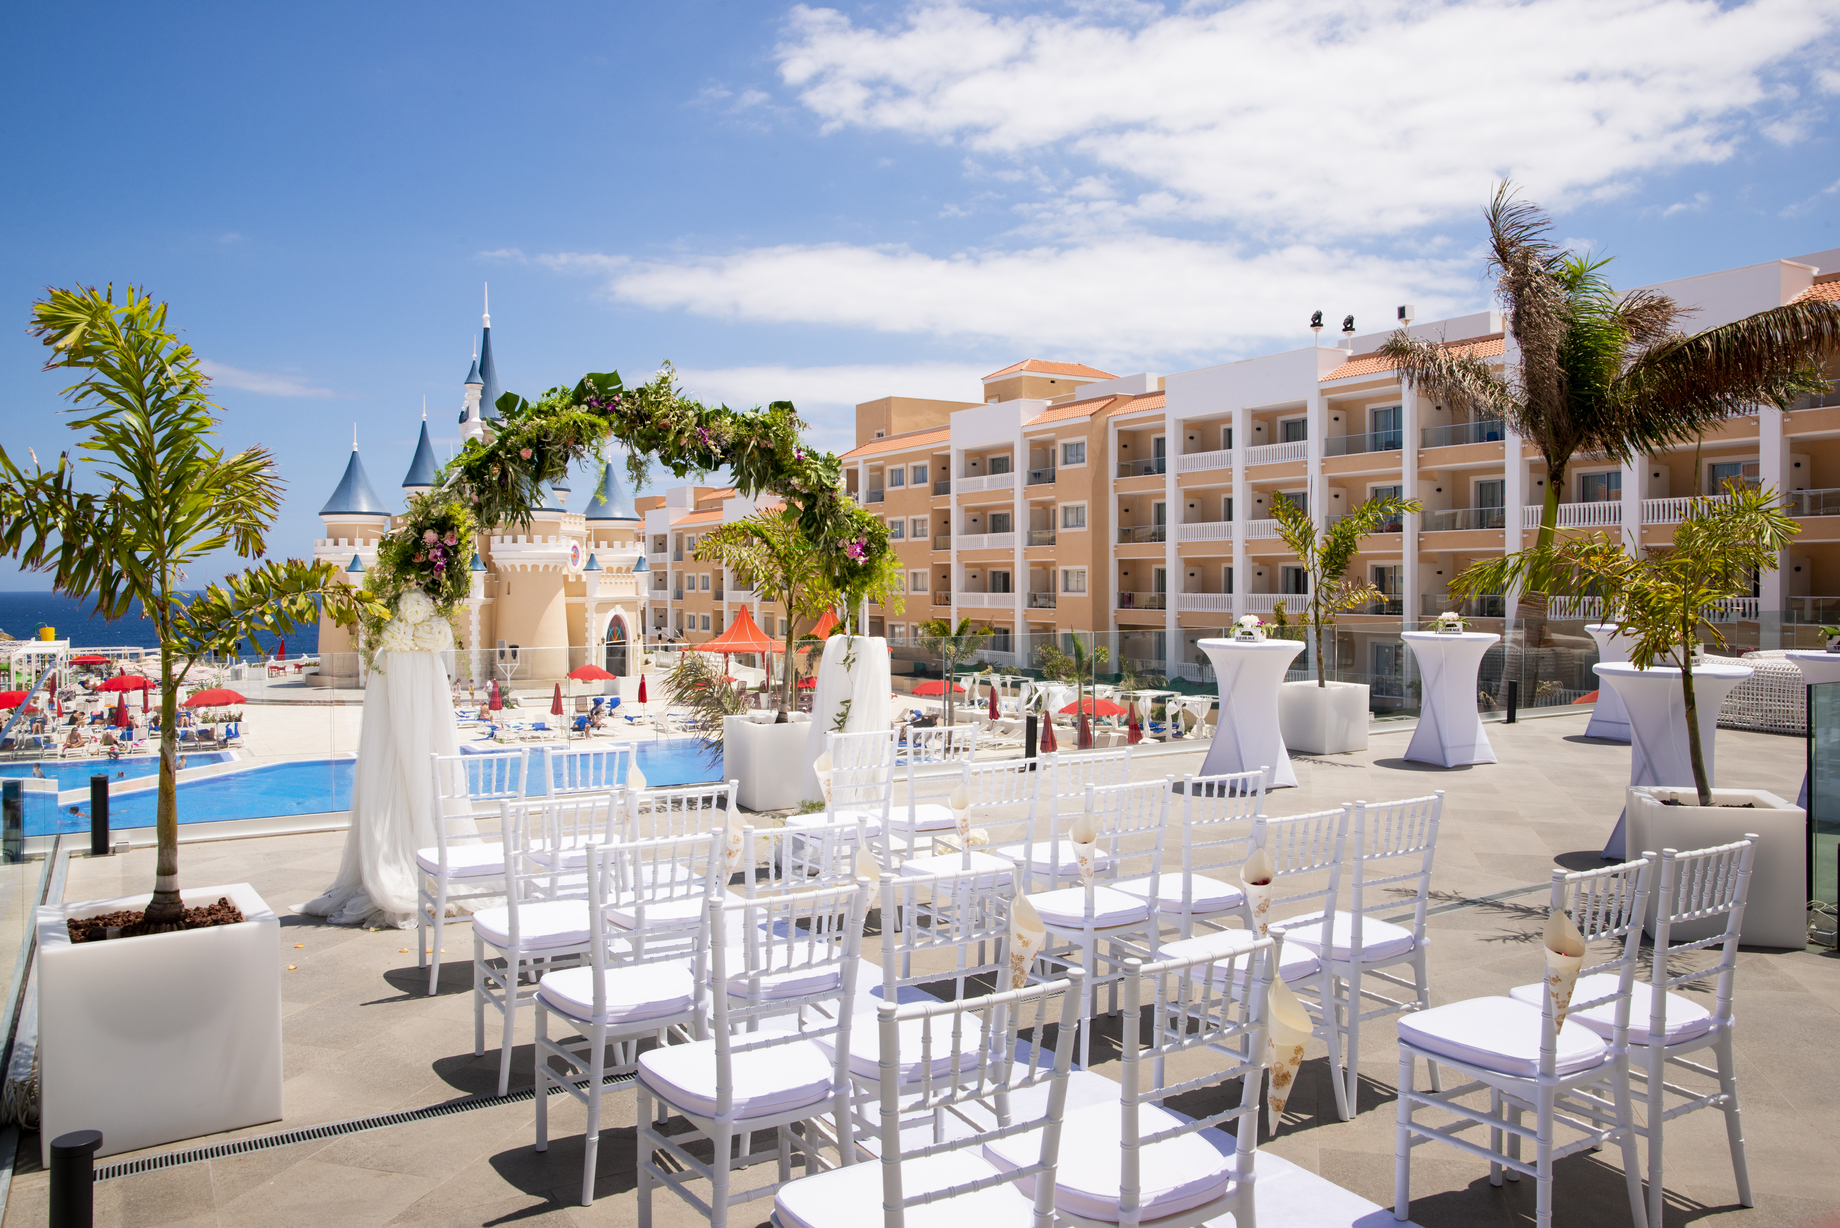 Book your wedding day in Bahia Principe Fantasia Tenerife